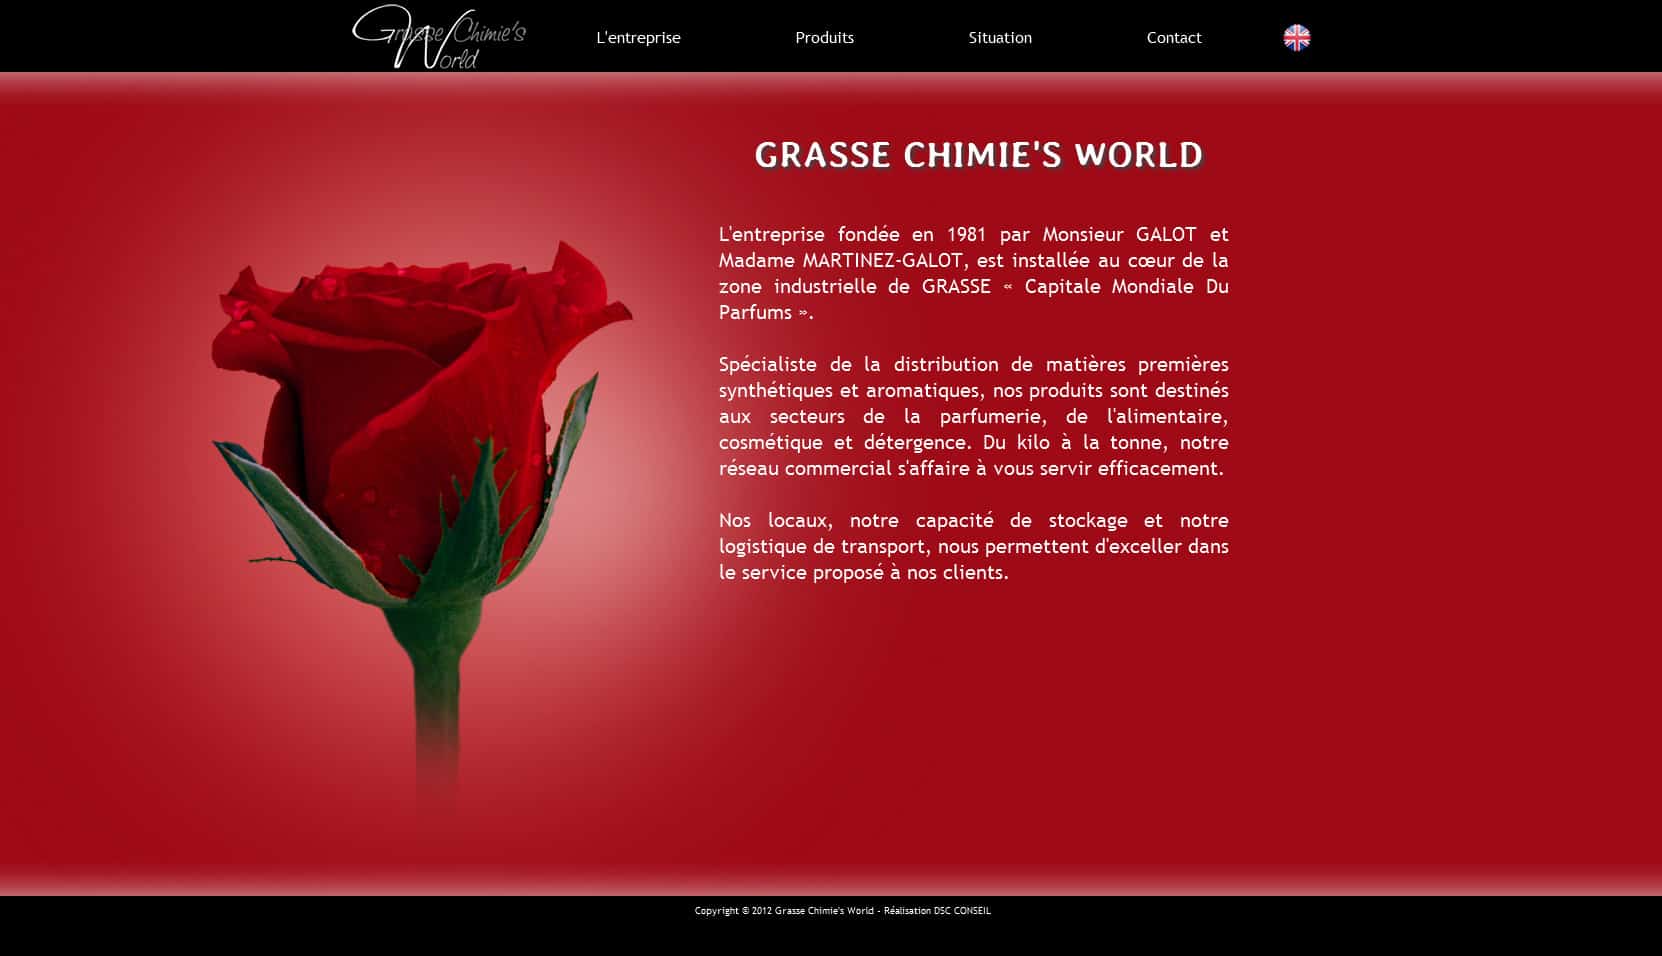 Page de présentation de l'entreprise Grasse Chimie's World.